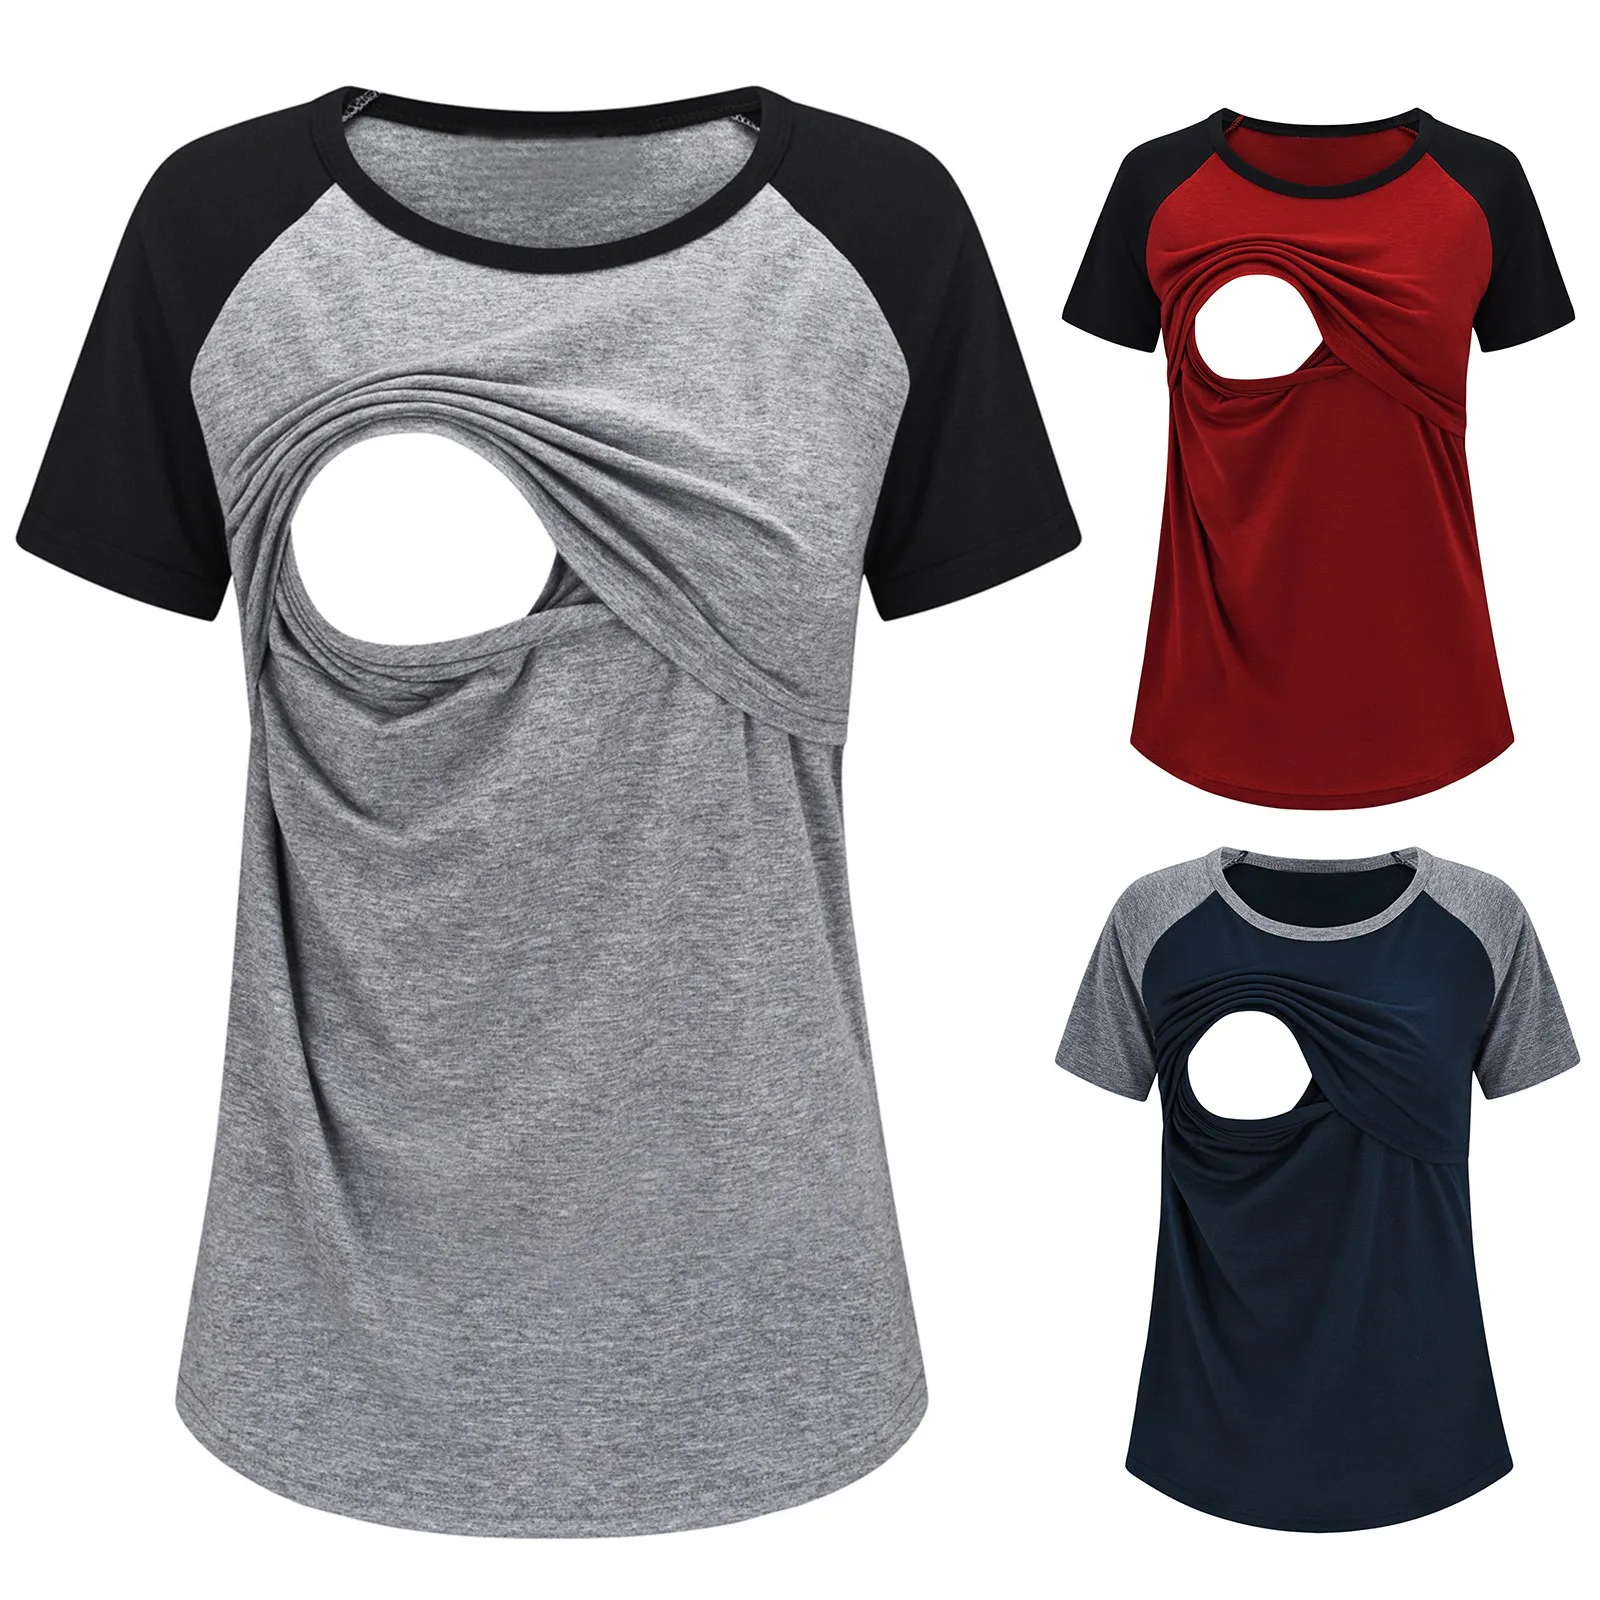 

Одежда для беременных женщин Повседневная Свободная футболка для грудного вскармливания Топы с коротким рукавом и круглым вырезом для кормления